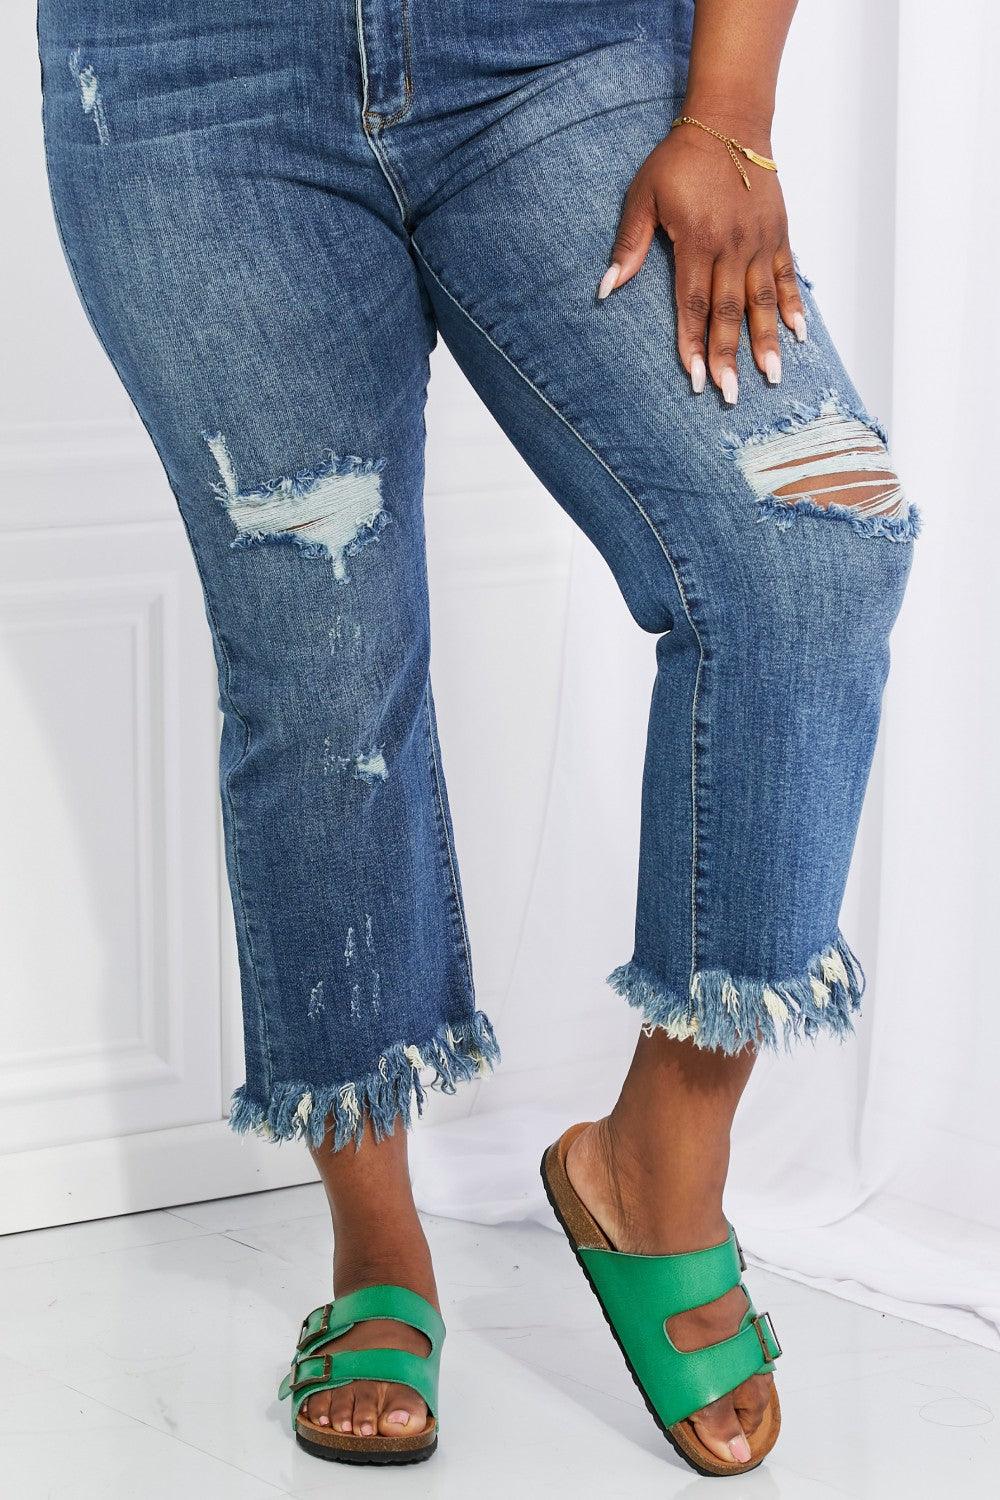 Bona Fide Fashion - Full Size Undone Chic Straight Leg Jeans - Women Fashion - Bona Fide Fashion